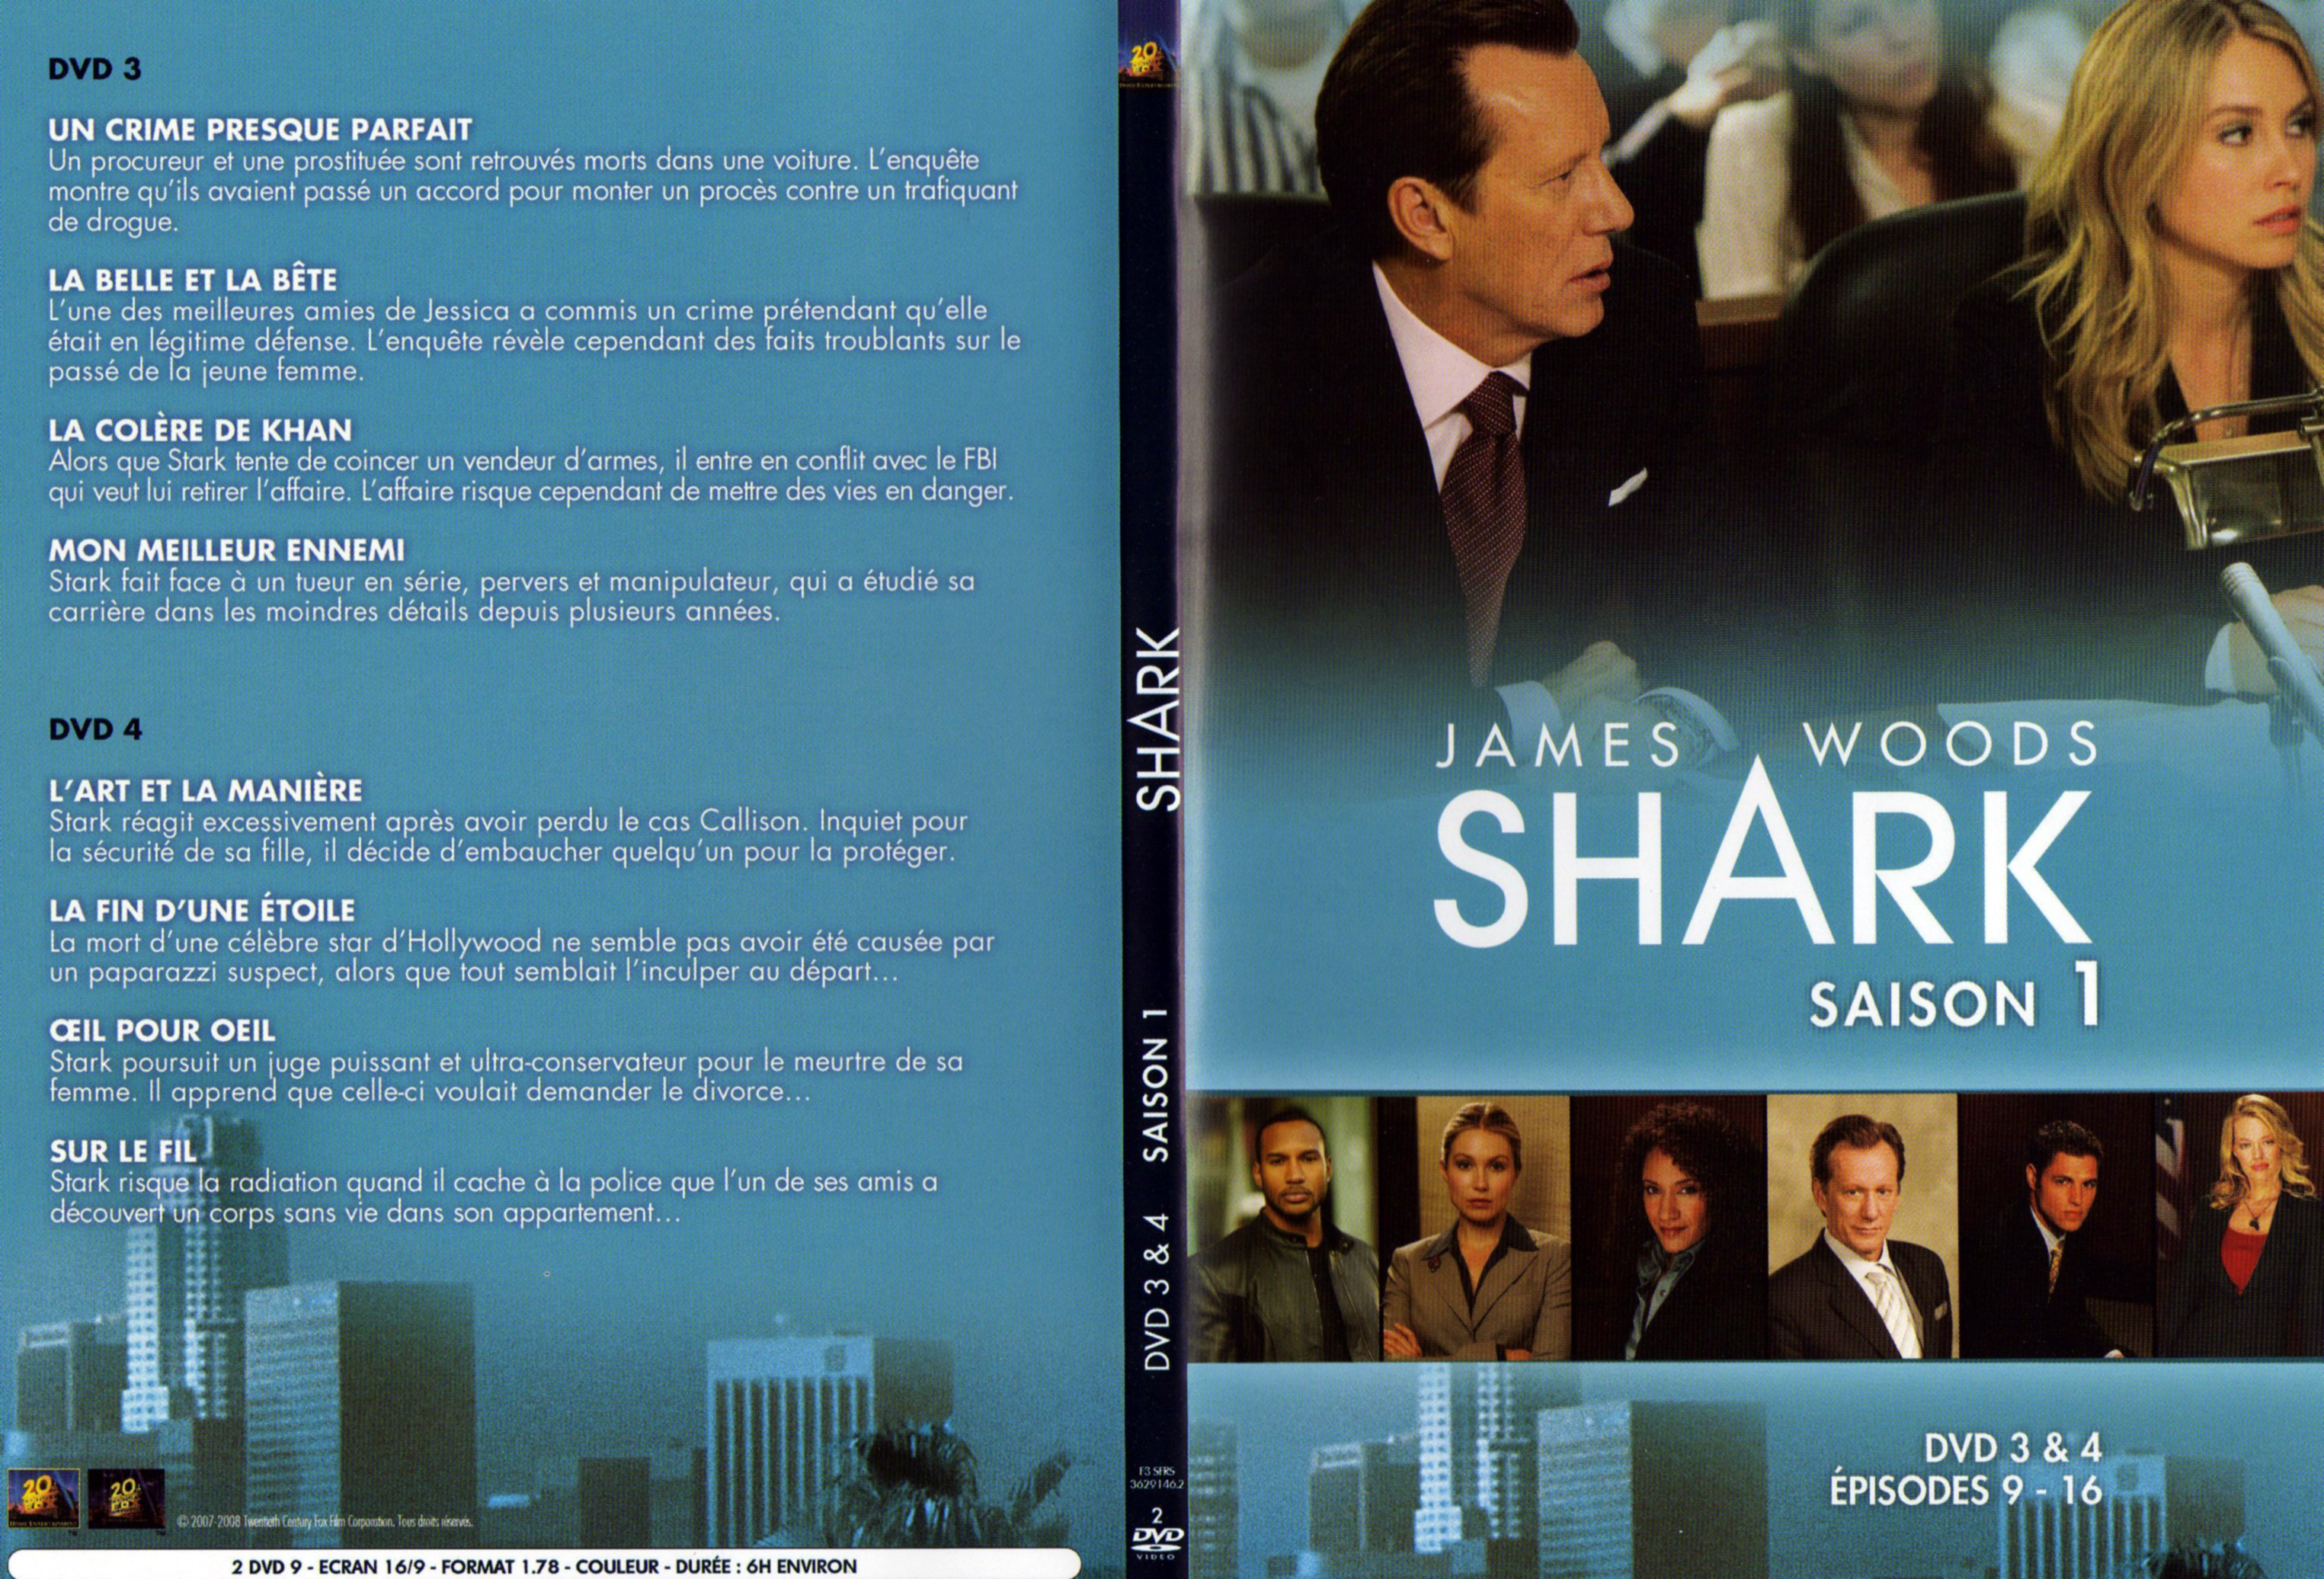 Jaquette DVD Shark Saison 1 DVD 2